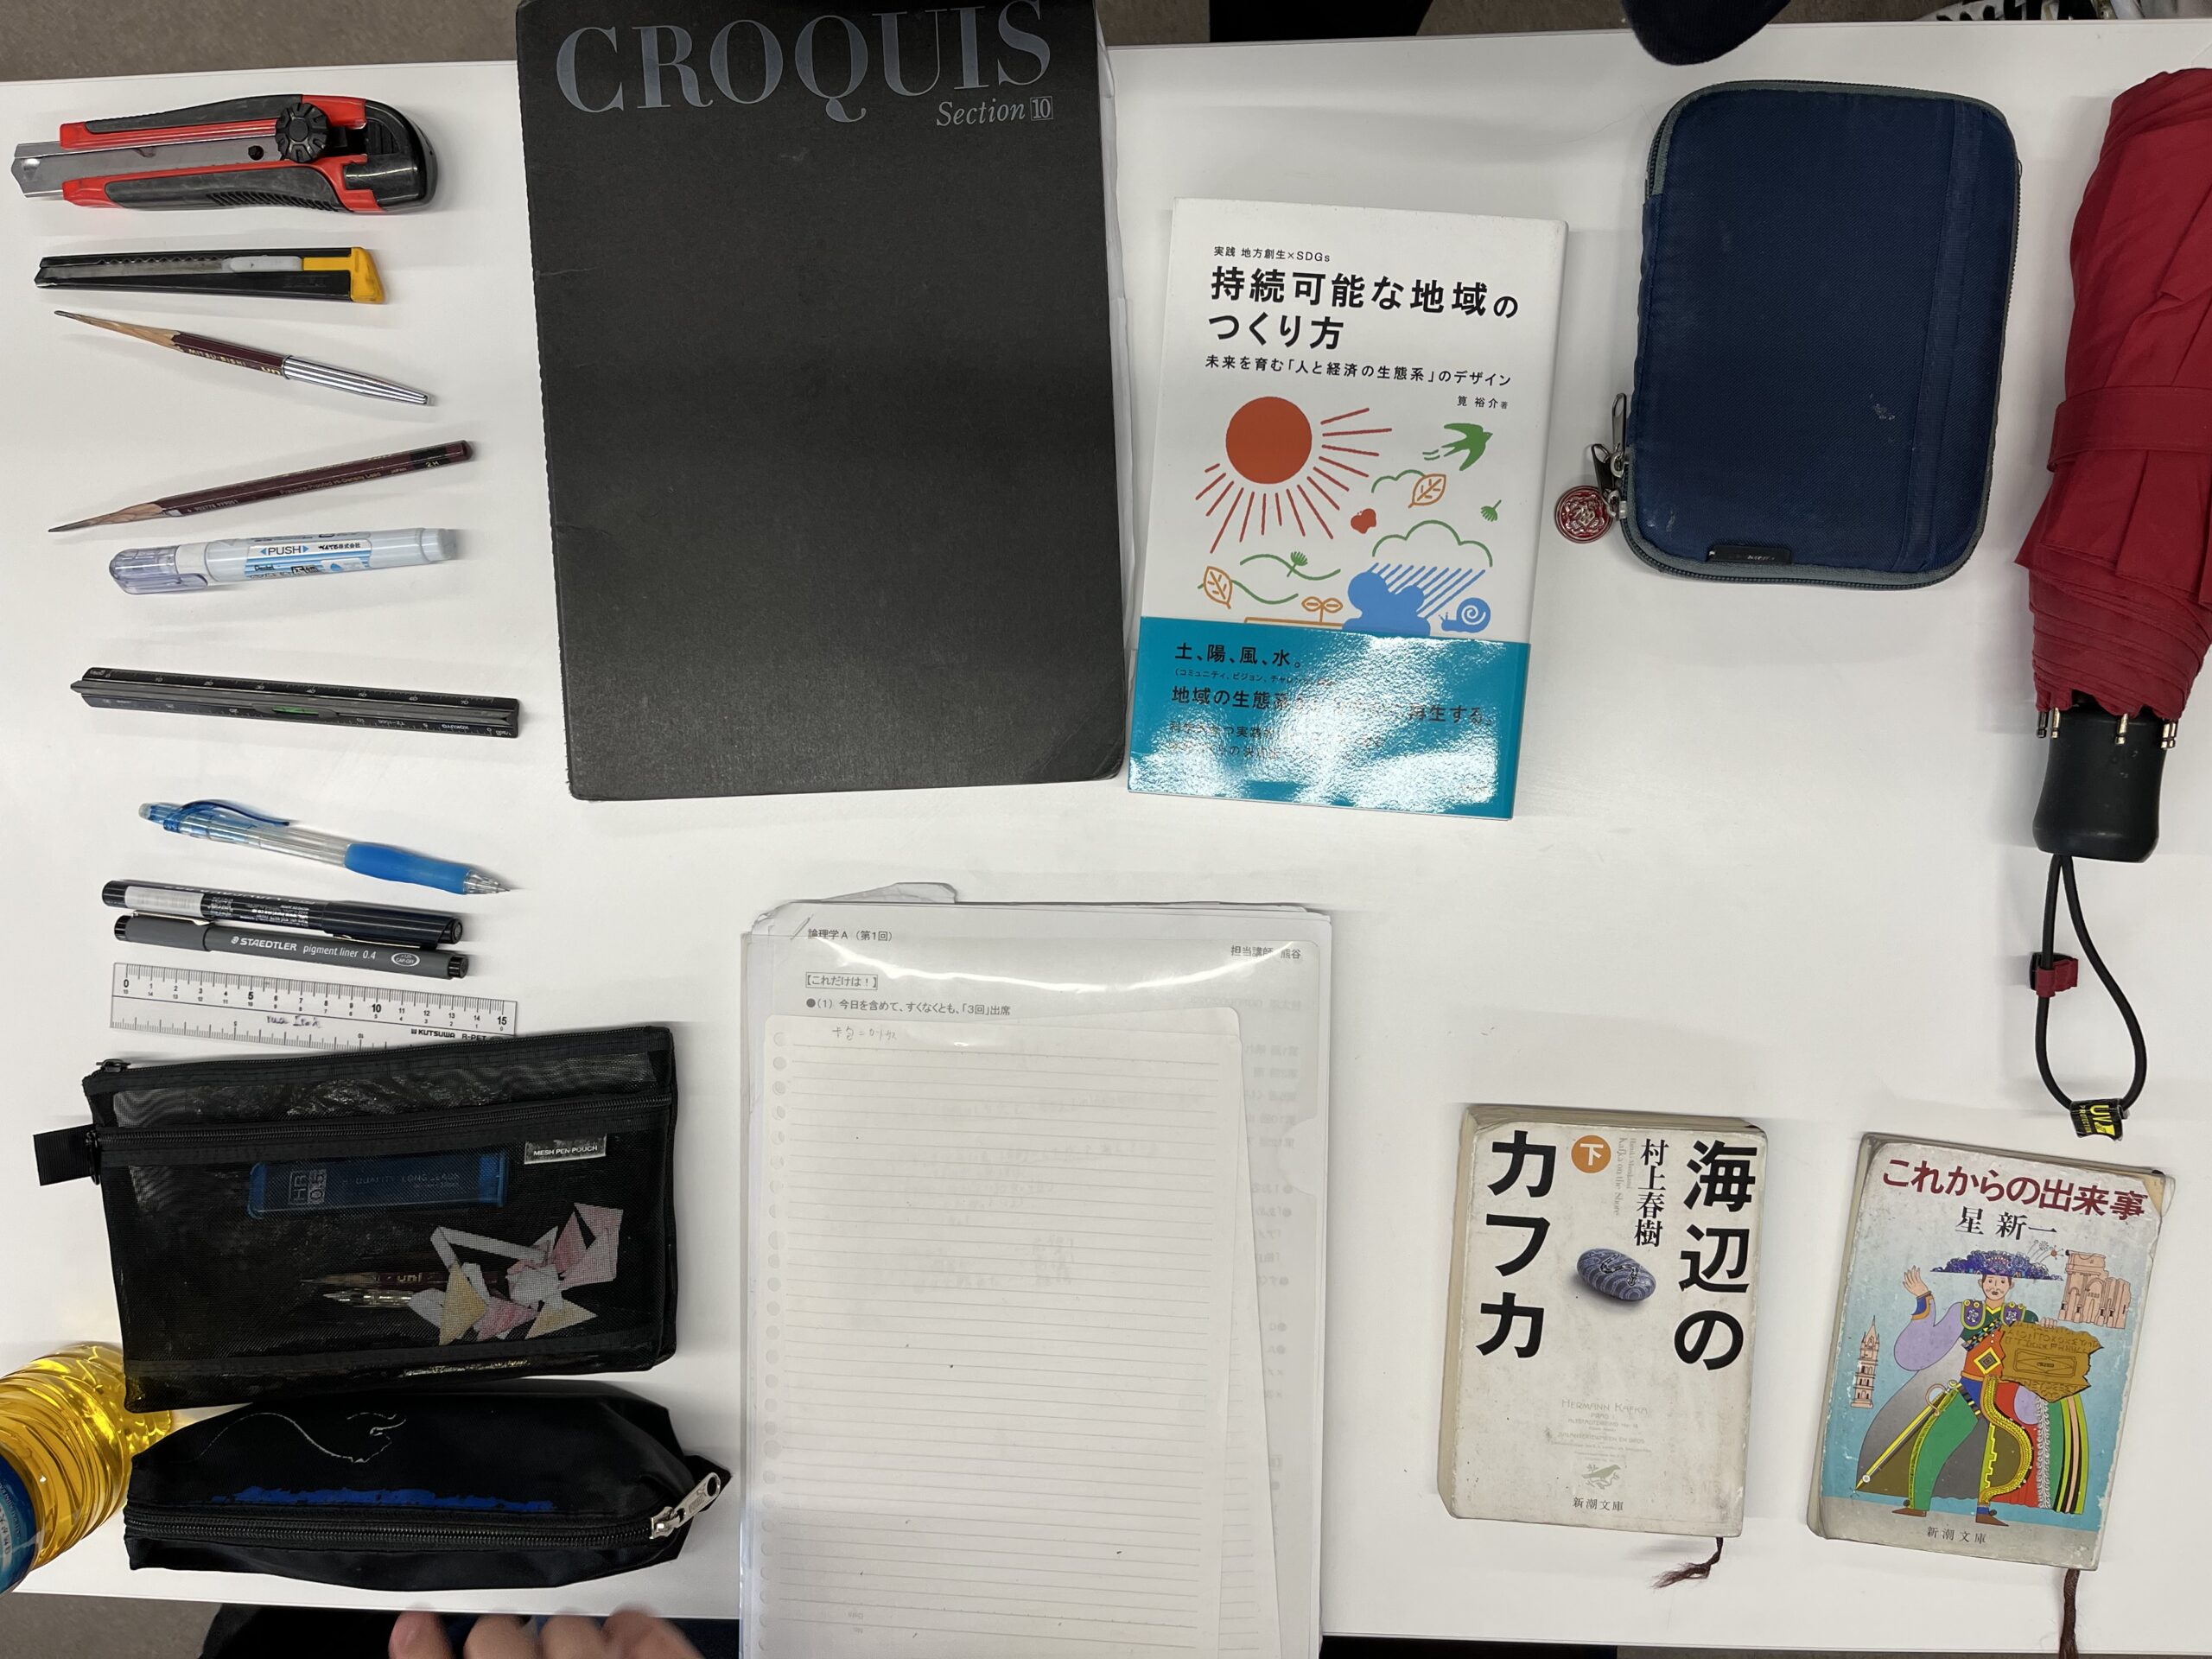 この生徒のバッグの中身は、クロッキー帳、傘、文庫本、修正液、鉛筆、カッター、定規、筆箱など。